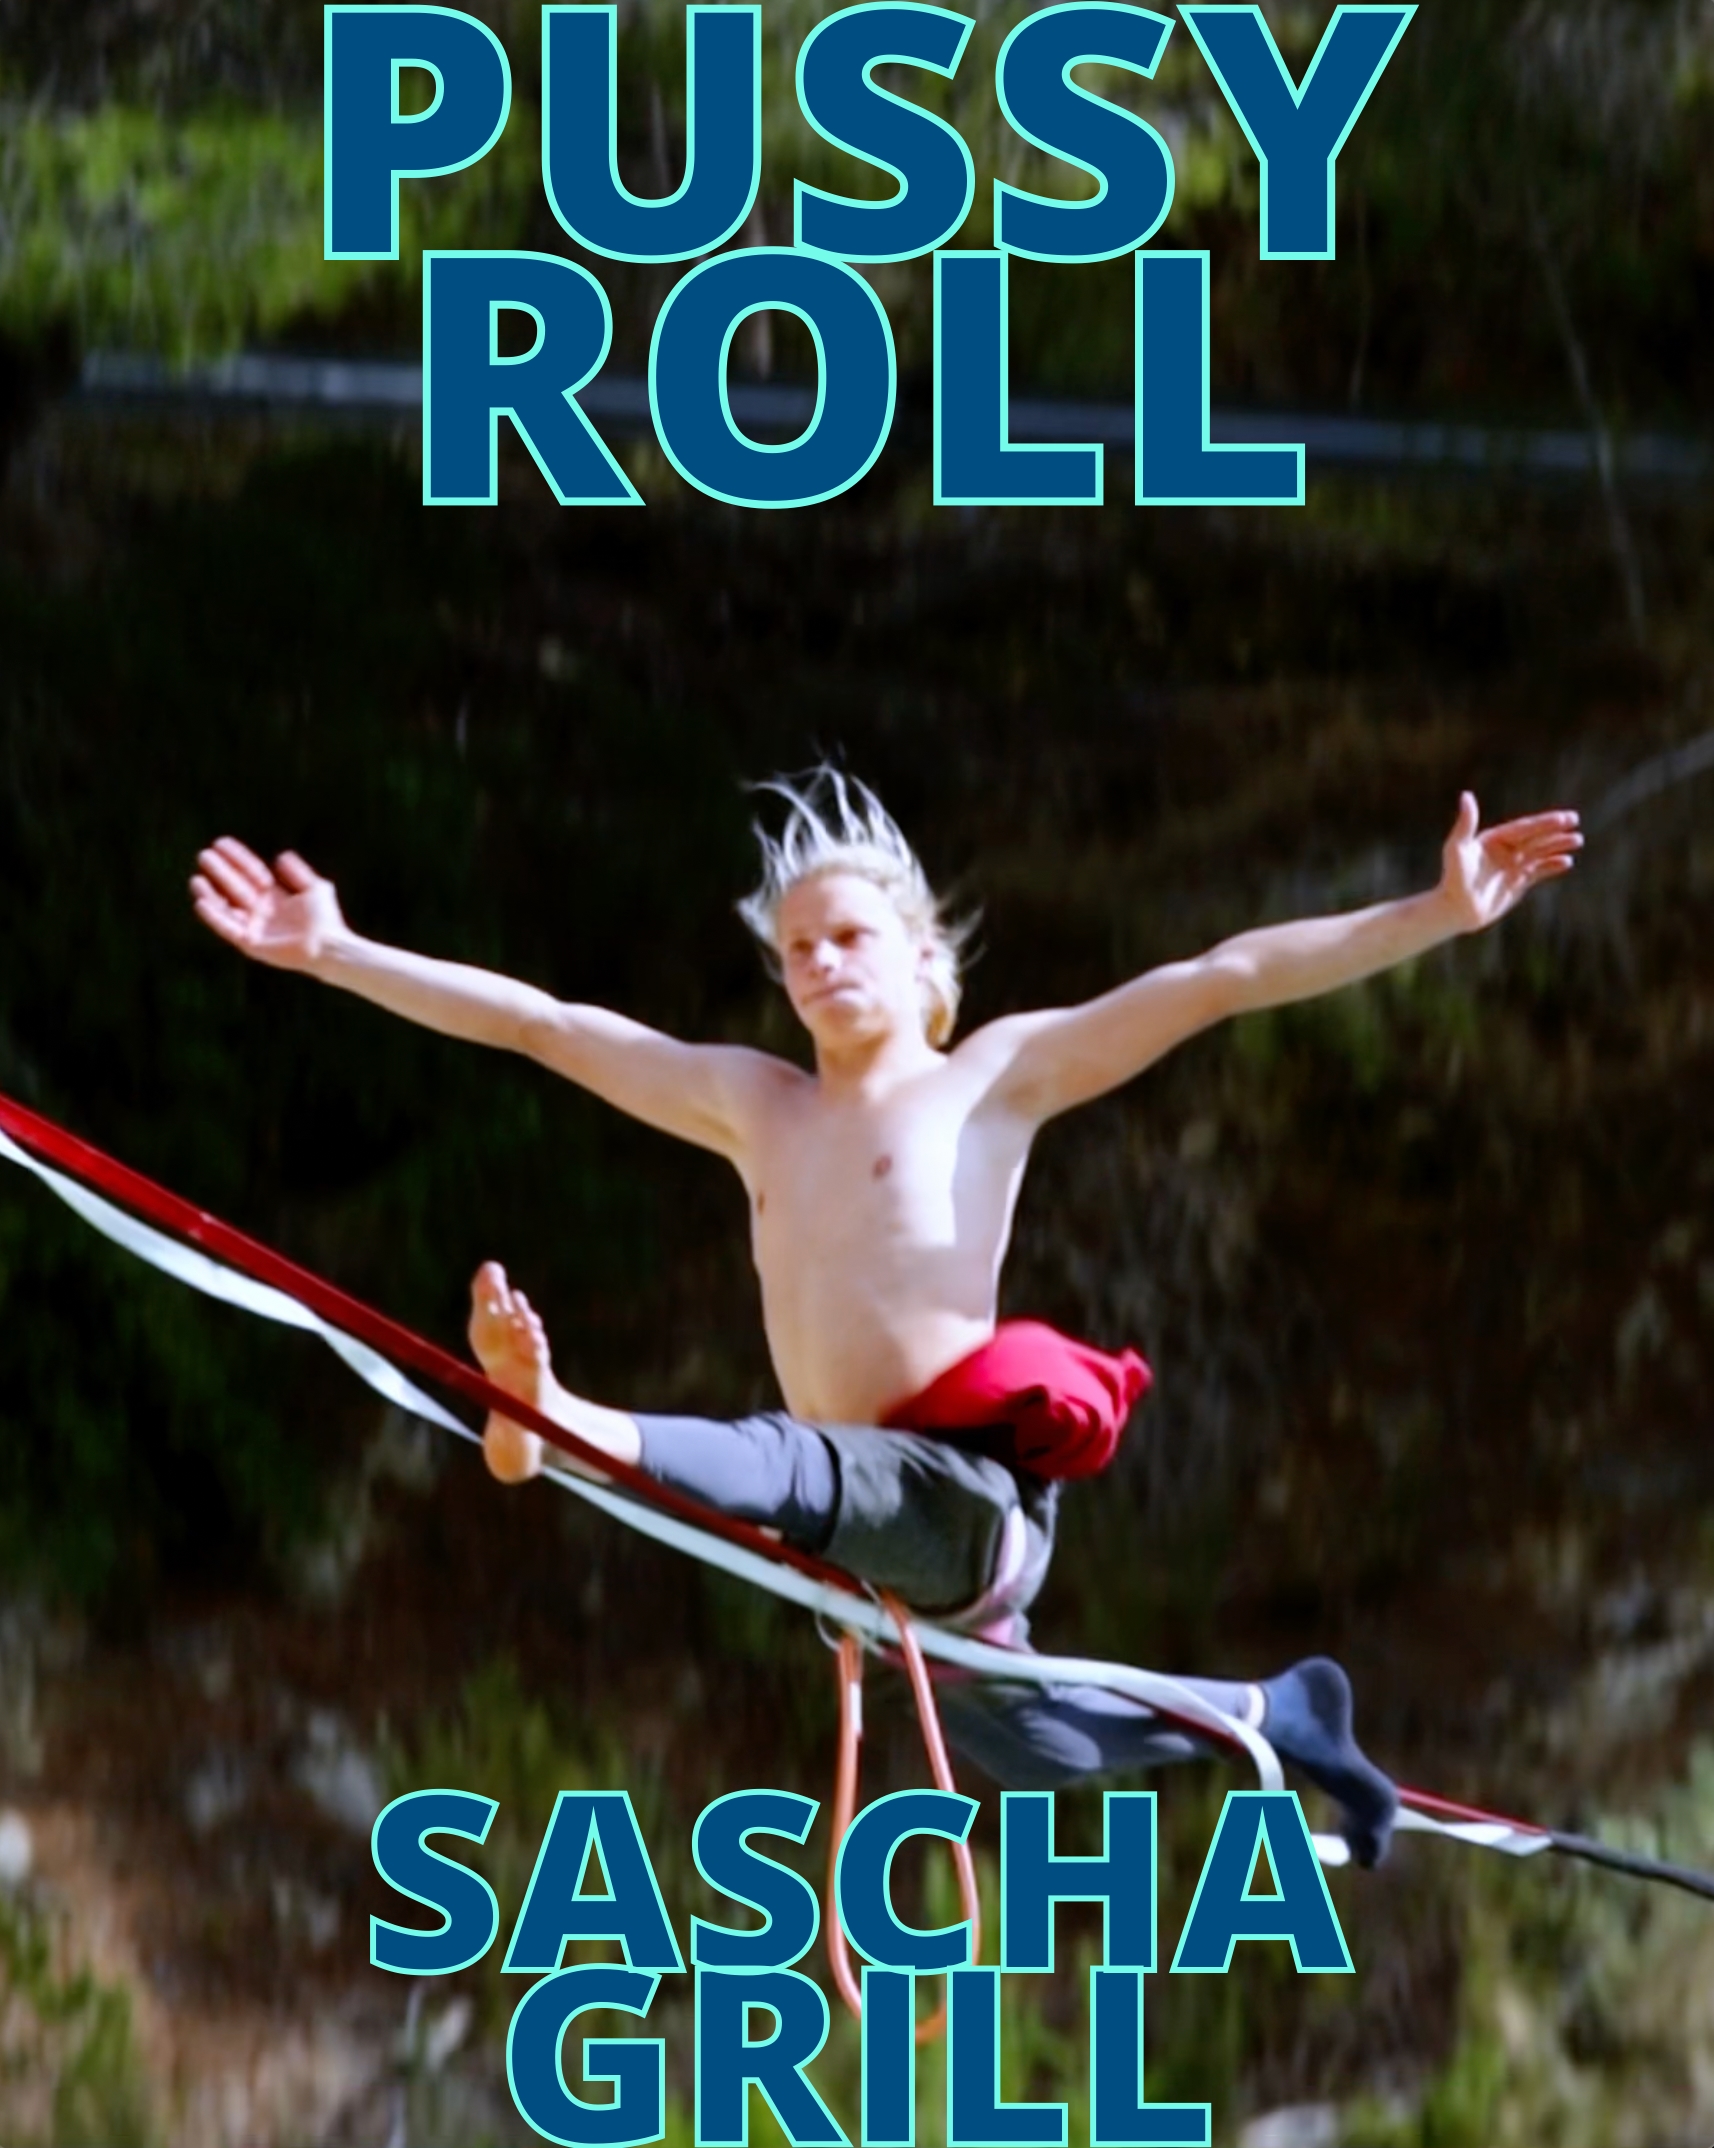 Sascha Grill's Pu**y Roll